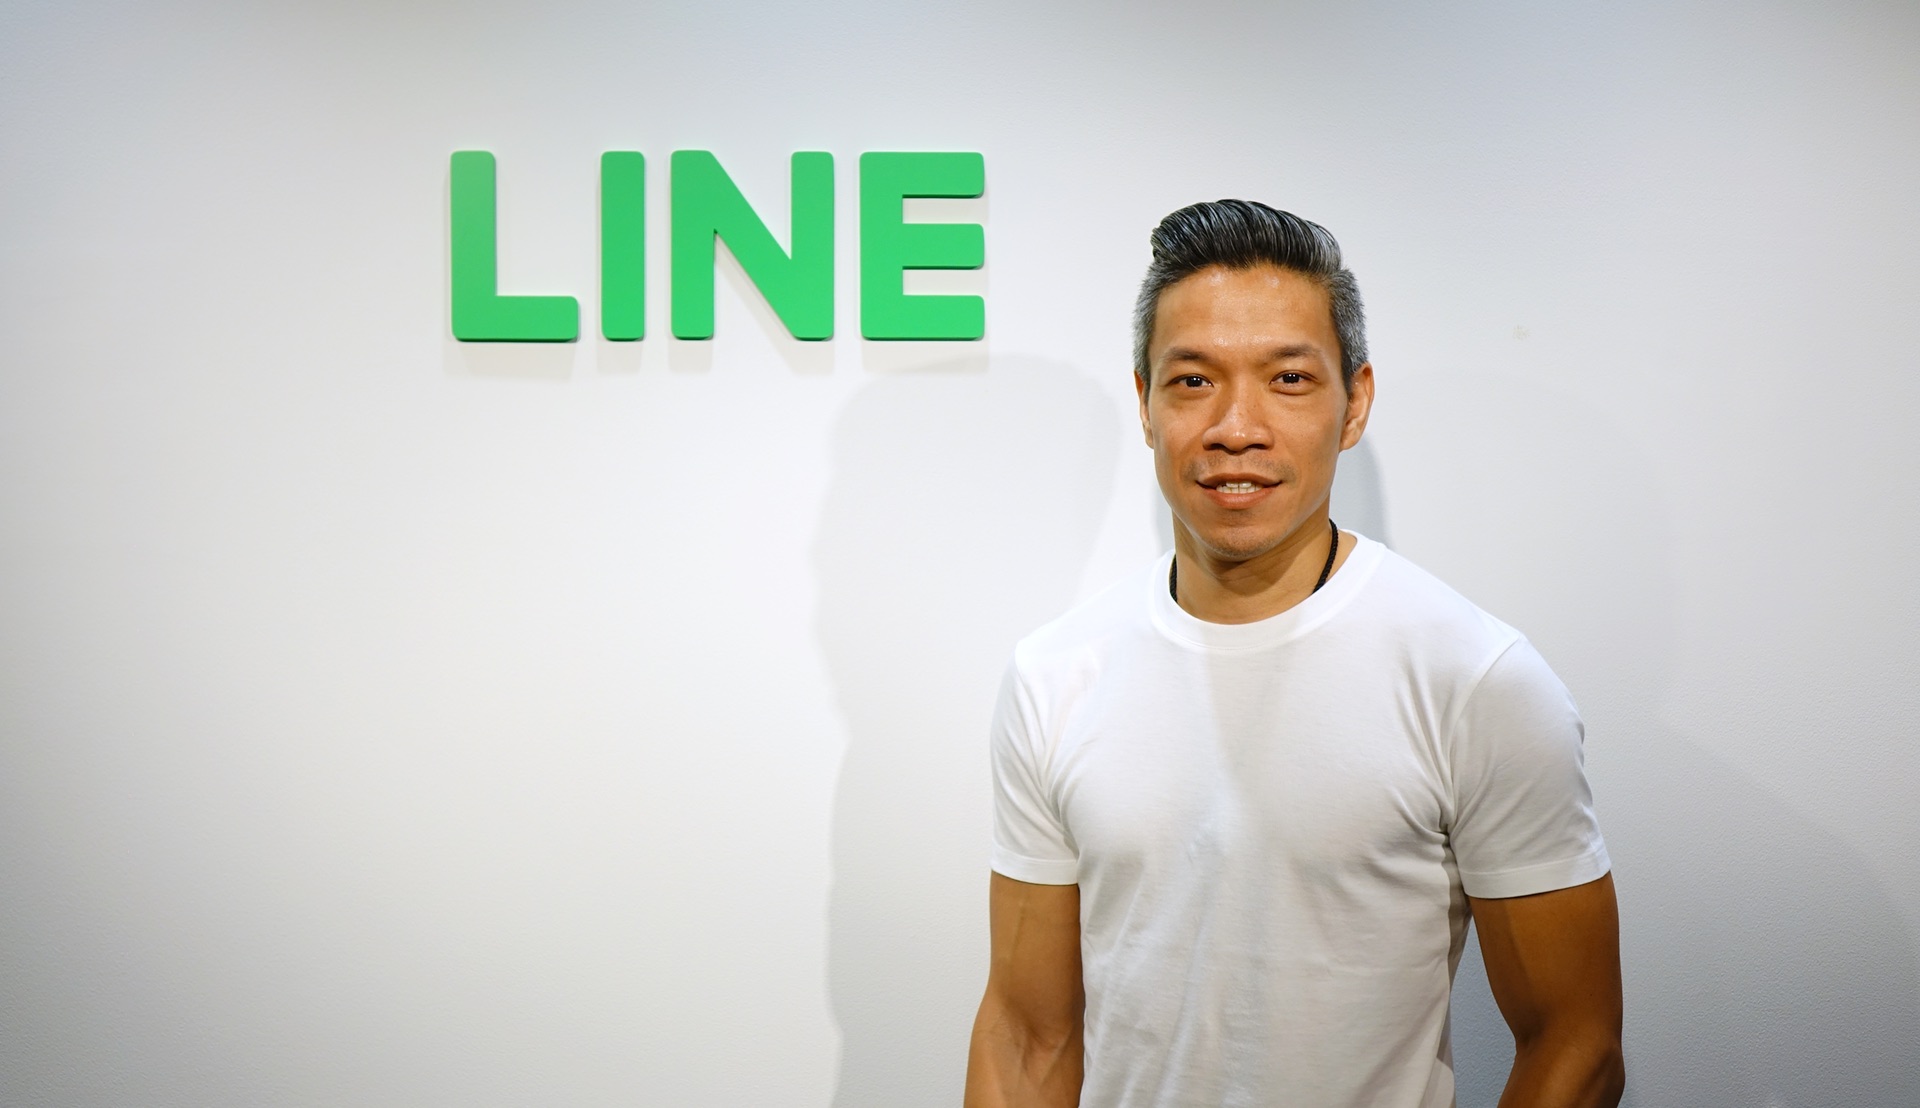 คุยกับอริยะ พนมยงค์ กรรมการผู้จัดการ LINE ประเทศไทย เมื่อไลน์เป็นแพลตฟอร์มเปิด